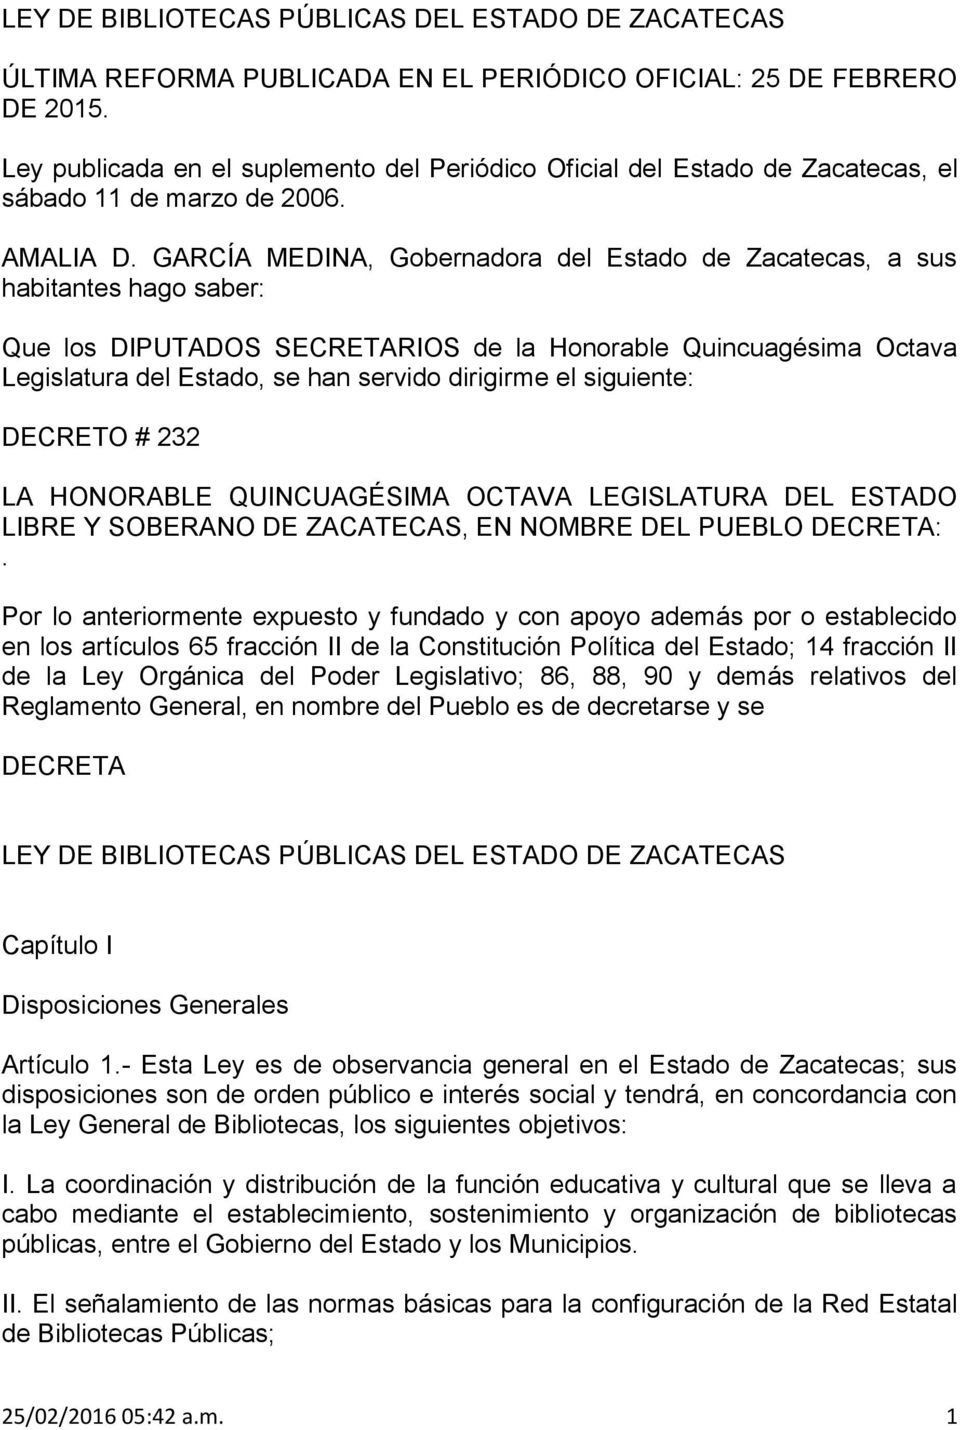 GARCÍA MEDINA, Gobernadora del Estado de Zacatecas, a sus habitantes hago saber: Que los DIPUTADOS SECRETARIOS de la Honorable Quincuagésima Octava Legislatura del Estado, se han servido dirigirme el